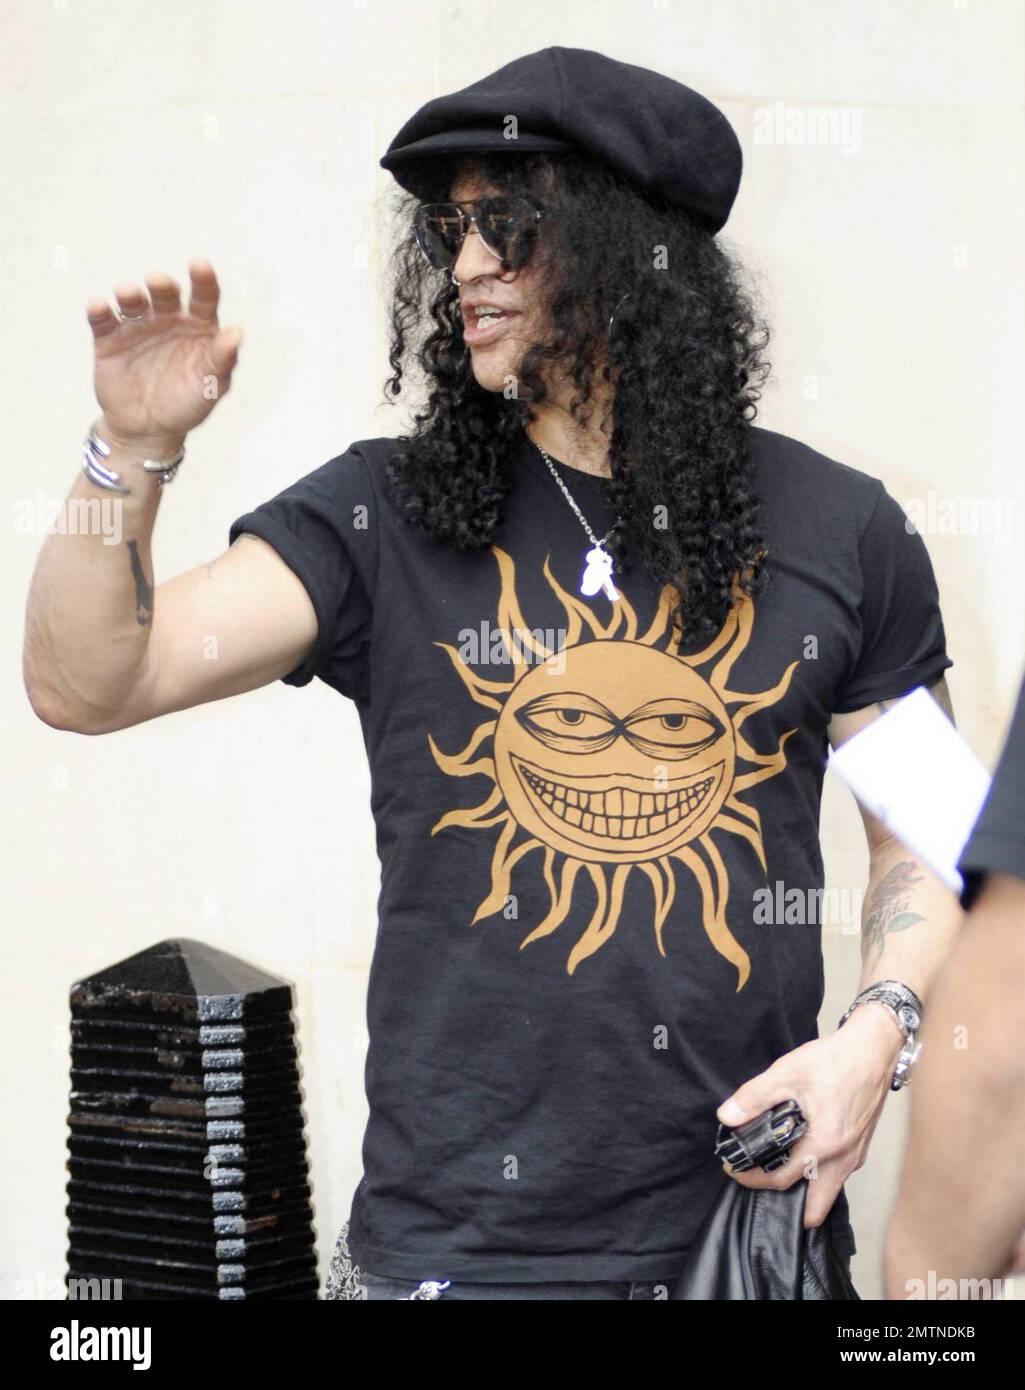 Il chitarrista rock Slash (Saul Hudson), canti il suo cappello, sembra  rilassato quando arriva al suo hotel di Londra, dove firma autografi per i  fan. Londra, Regno Unito. 05/27/10 Foto stock - Alamy